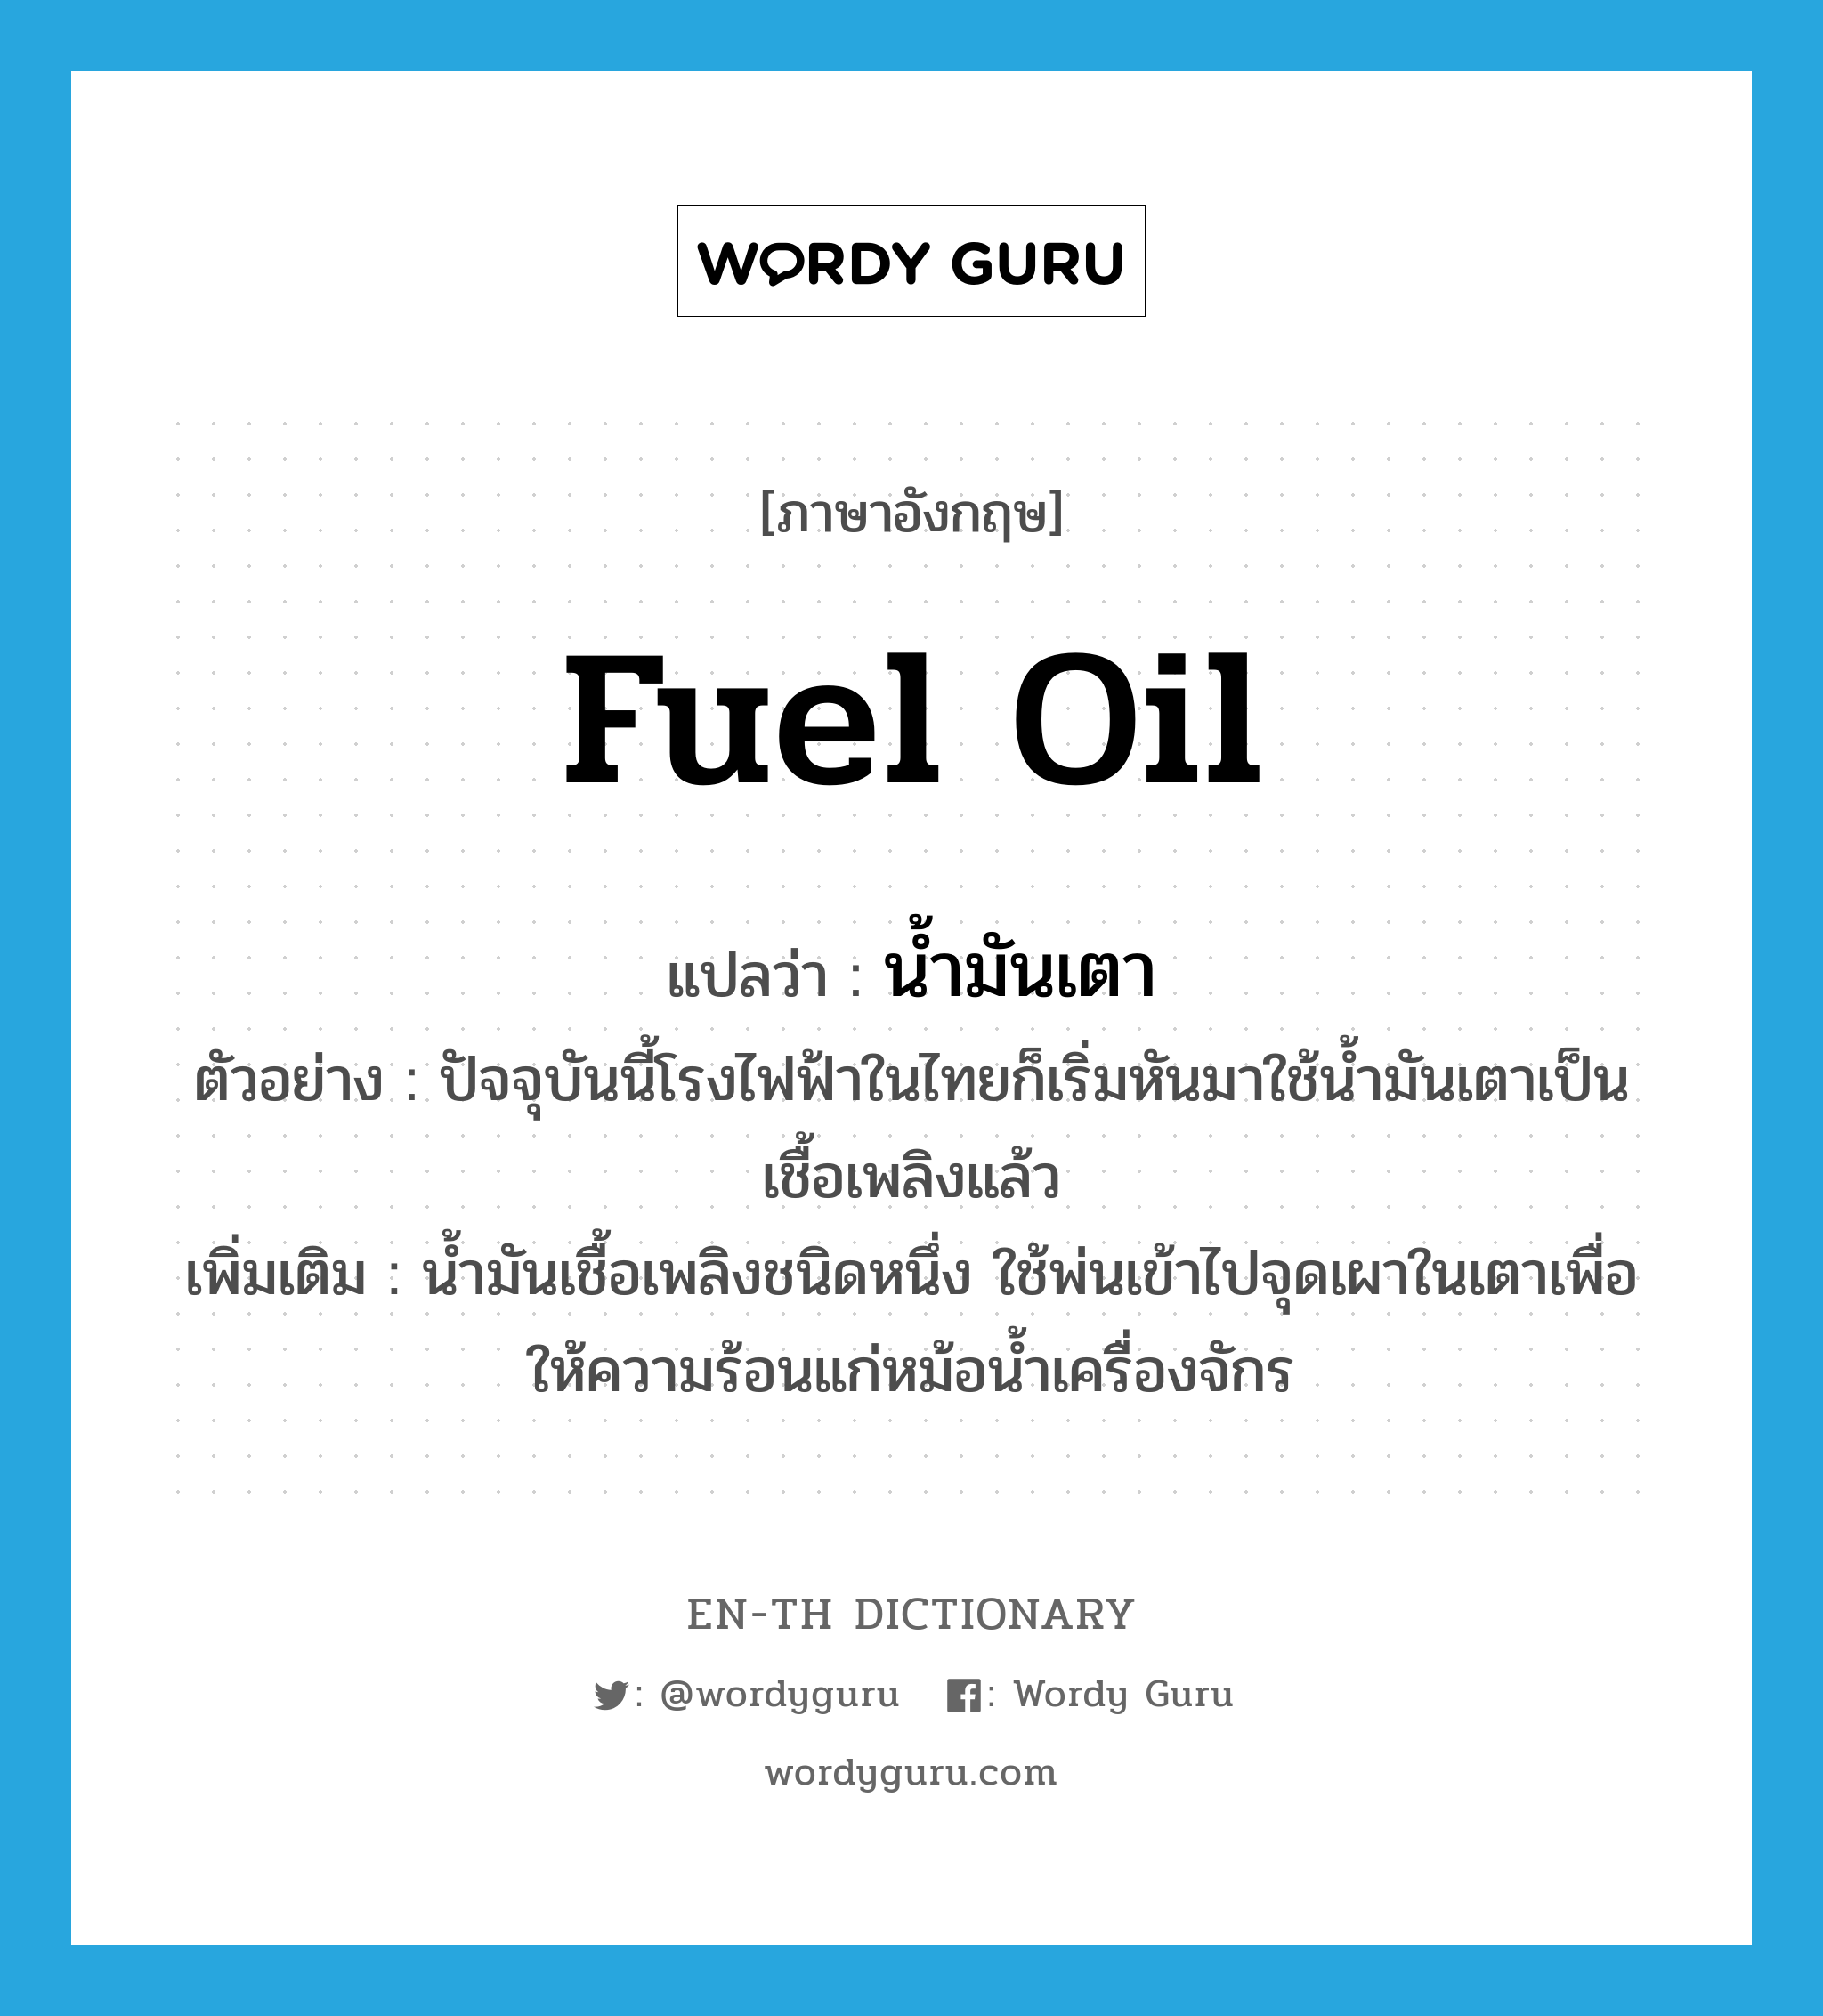 fuel oil แปลว่า?, คำศัพท์ภาษาอังกฤษ fuel oil แปลว่า น้ำมันเตา ประเภท N ตัวอย่าง ปัจจุบันนี้โรงไฟฟ้าในไทยก็เริ่มหันมาใช้น้ำมันเตาเป็นเชื้อเพลิงแล้ว เพิ่มเติม น้ำมันเชื้อเพลิงชนิดหนึ่ง ใช้พ่นเข้าไปจุดเผาในเตาเพื่อให้ความร้อนแก่หม้อน้ำเครื่องจักร หมวด N